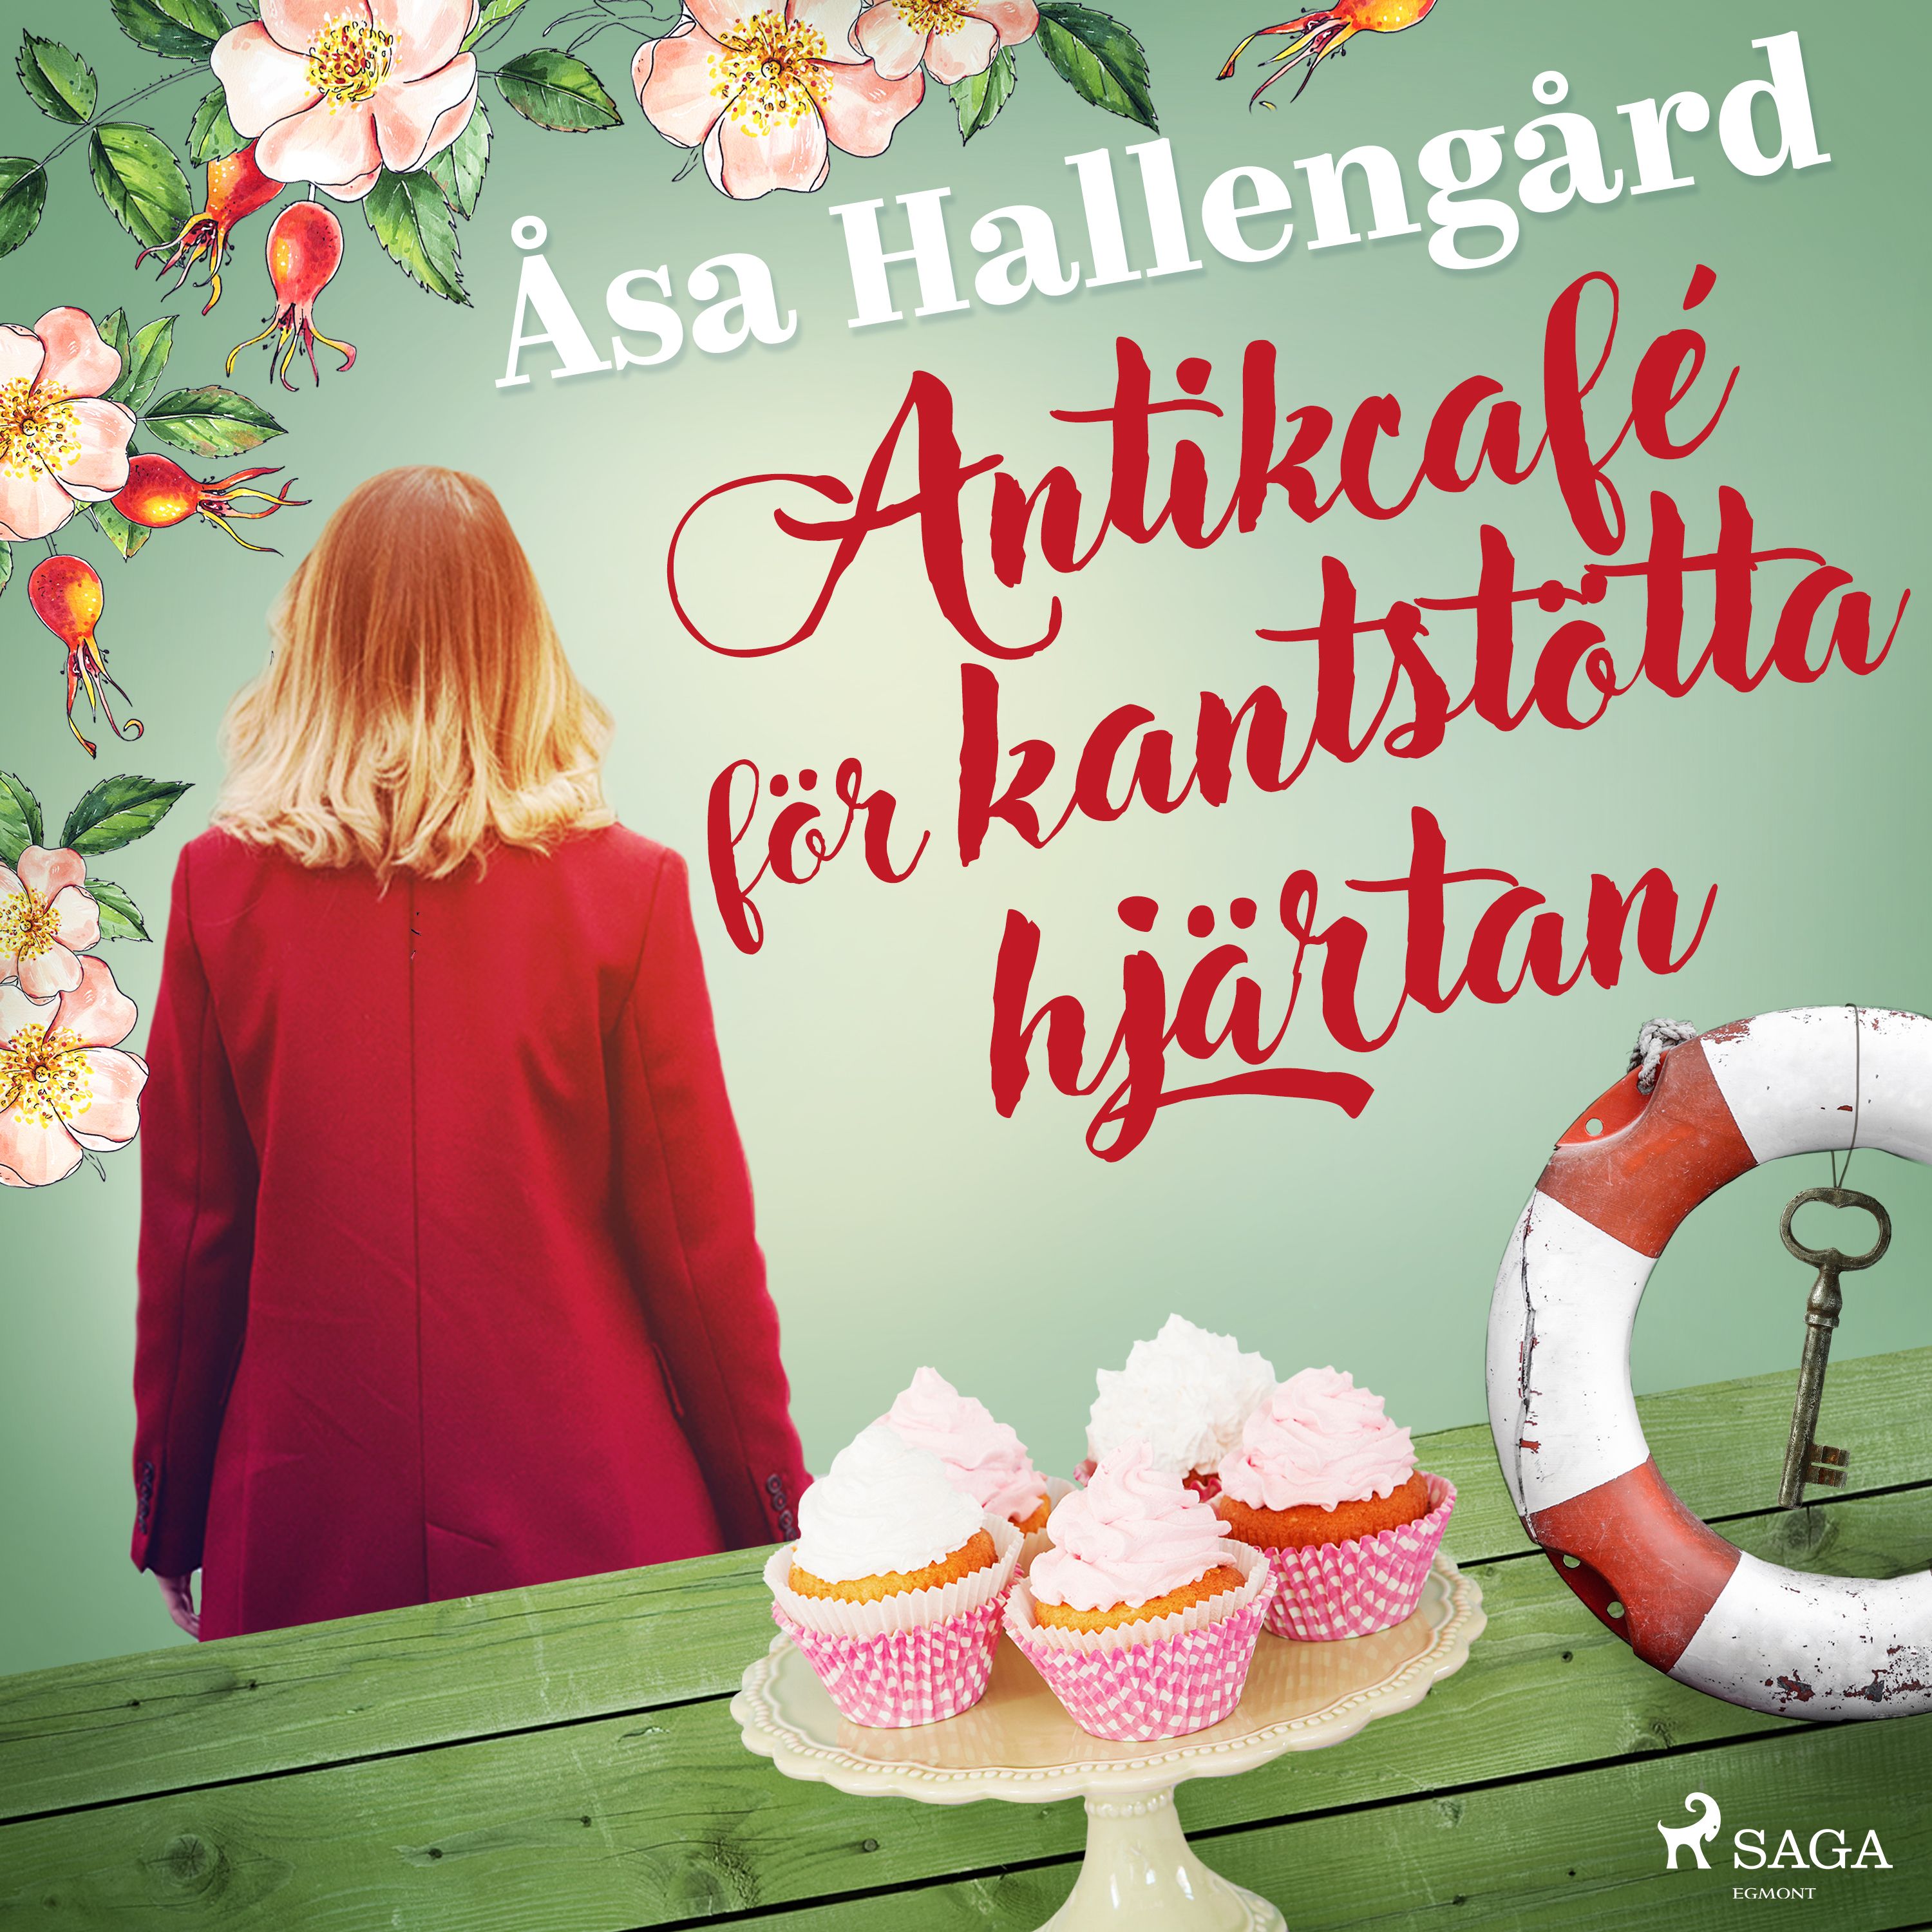 Antikcafé för kantstötta hjärtan, audiobook by Åsa Hallengård